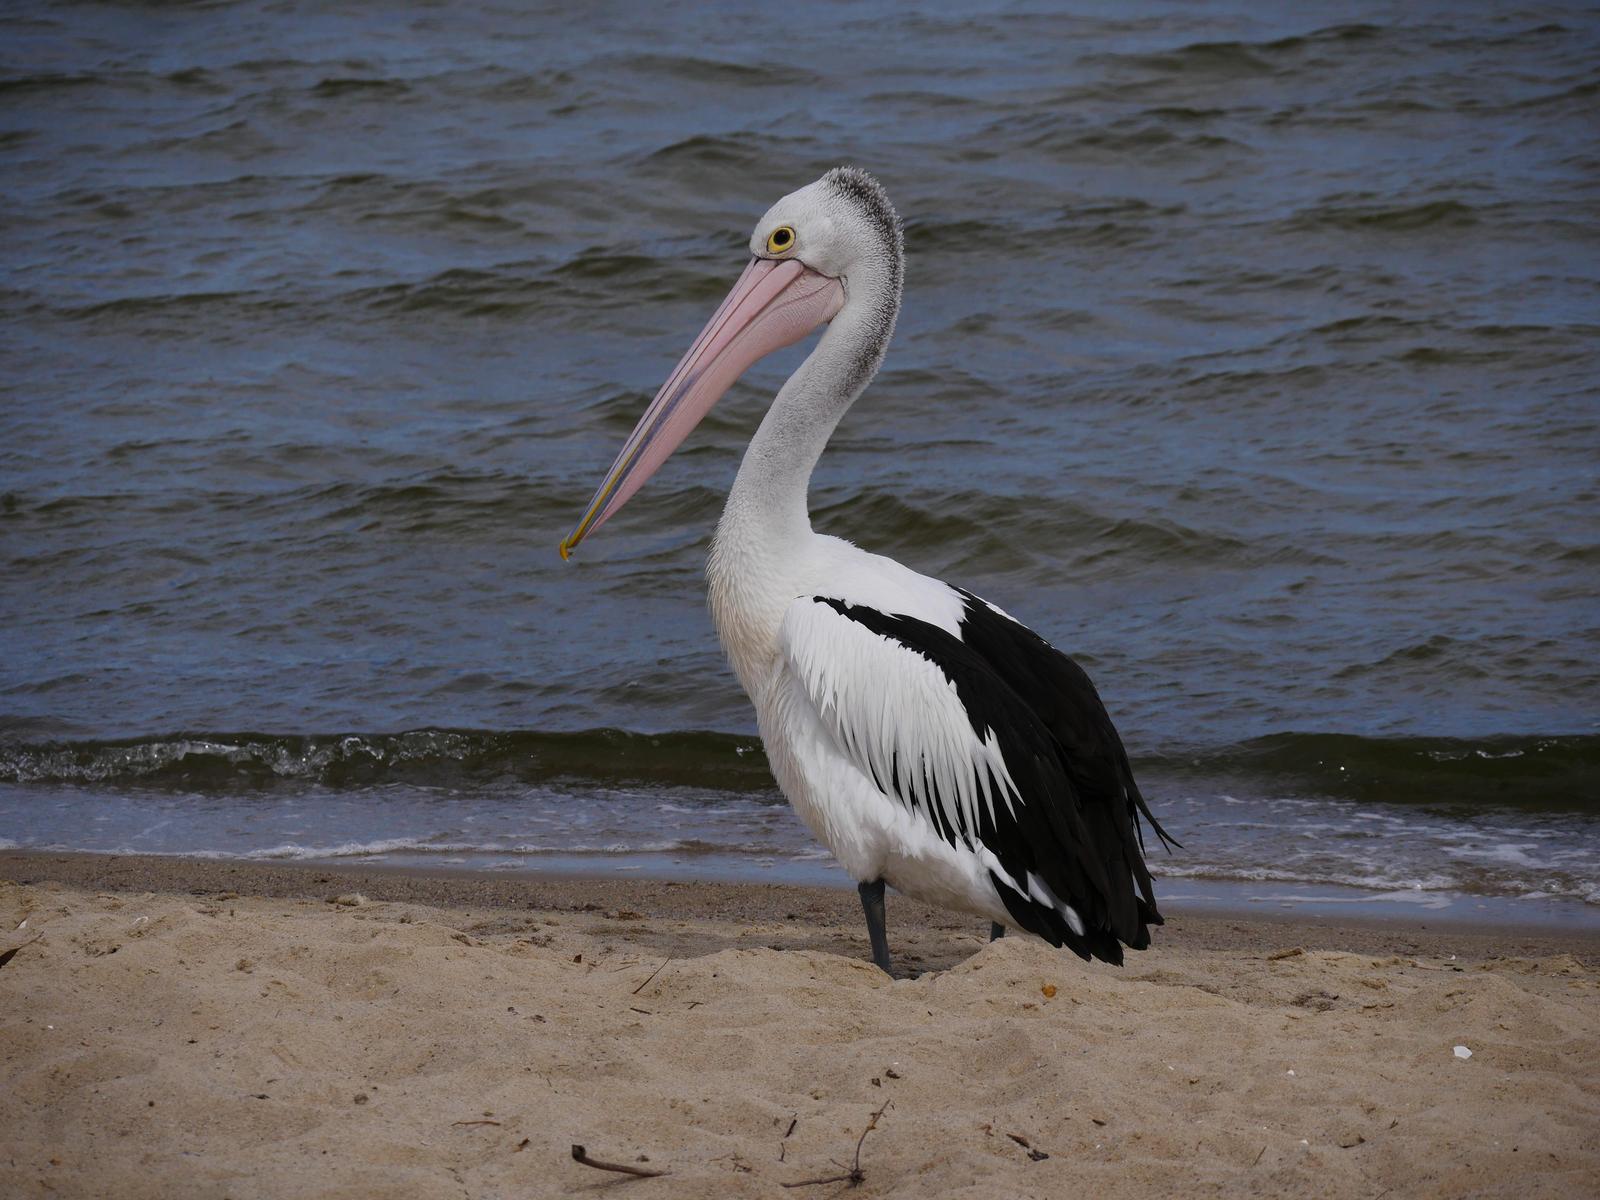 Australian Pelican Photo by Peter Lowe